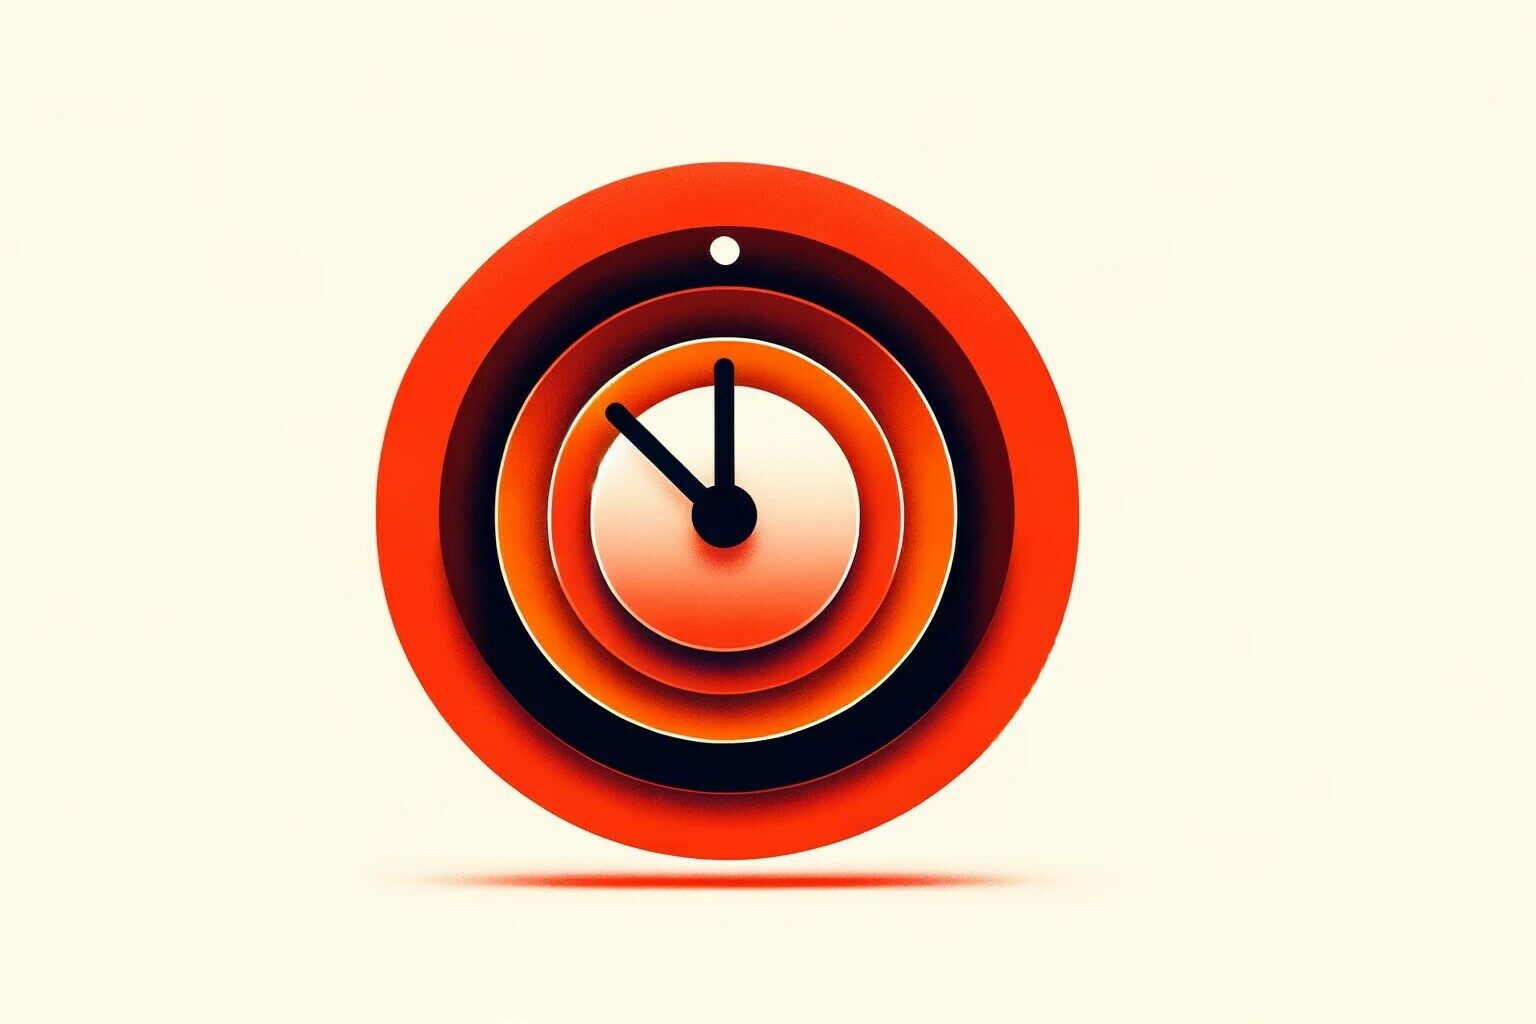 Visualisierung des Themas "Beipackzettel: Empfehlungen zur zeitlichen Umsetzung des Methodenkoffers" durch grafische Darstellung einer Uhr in rot-orange.